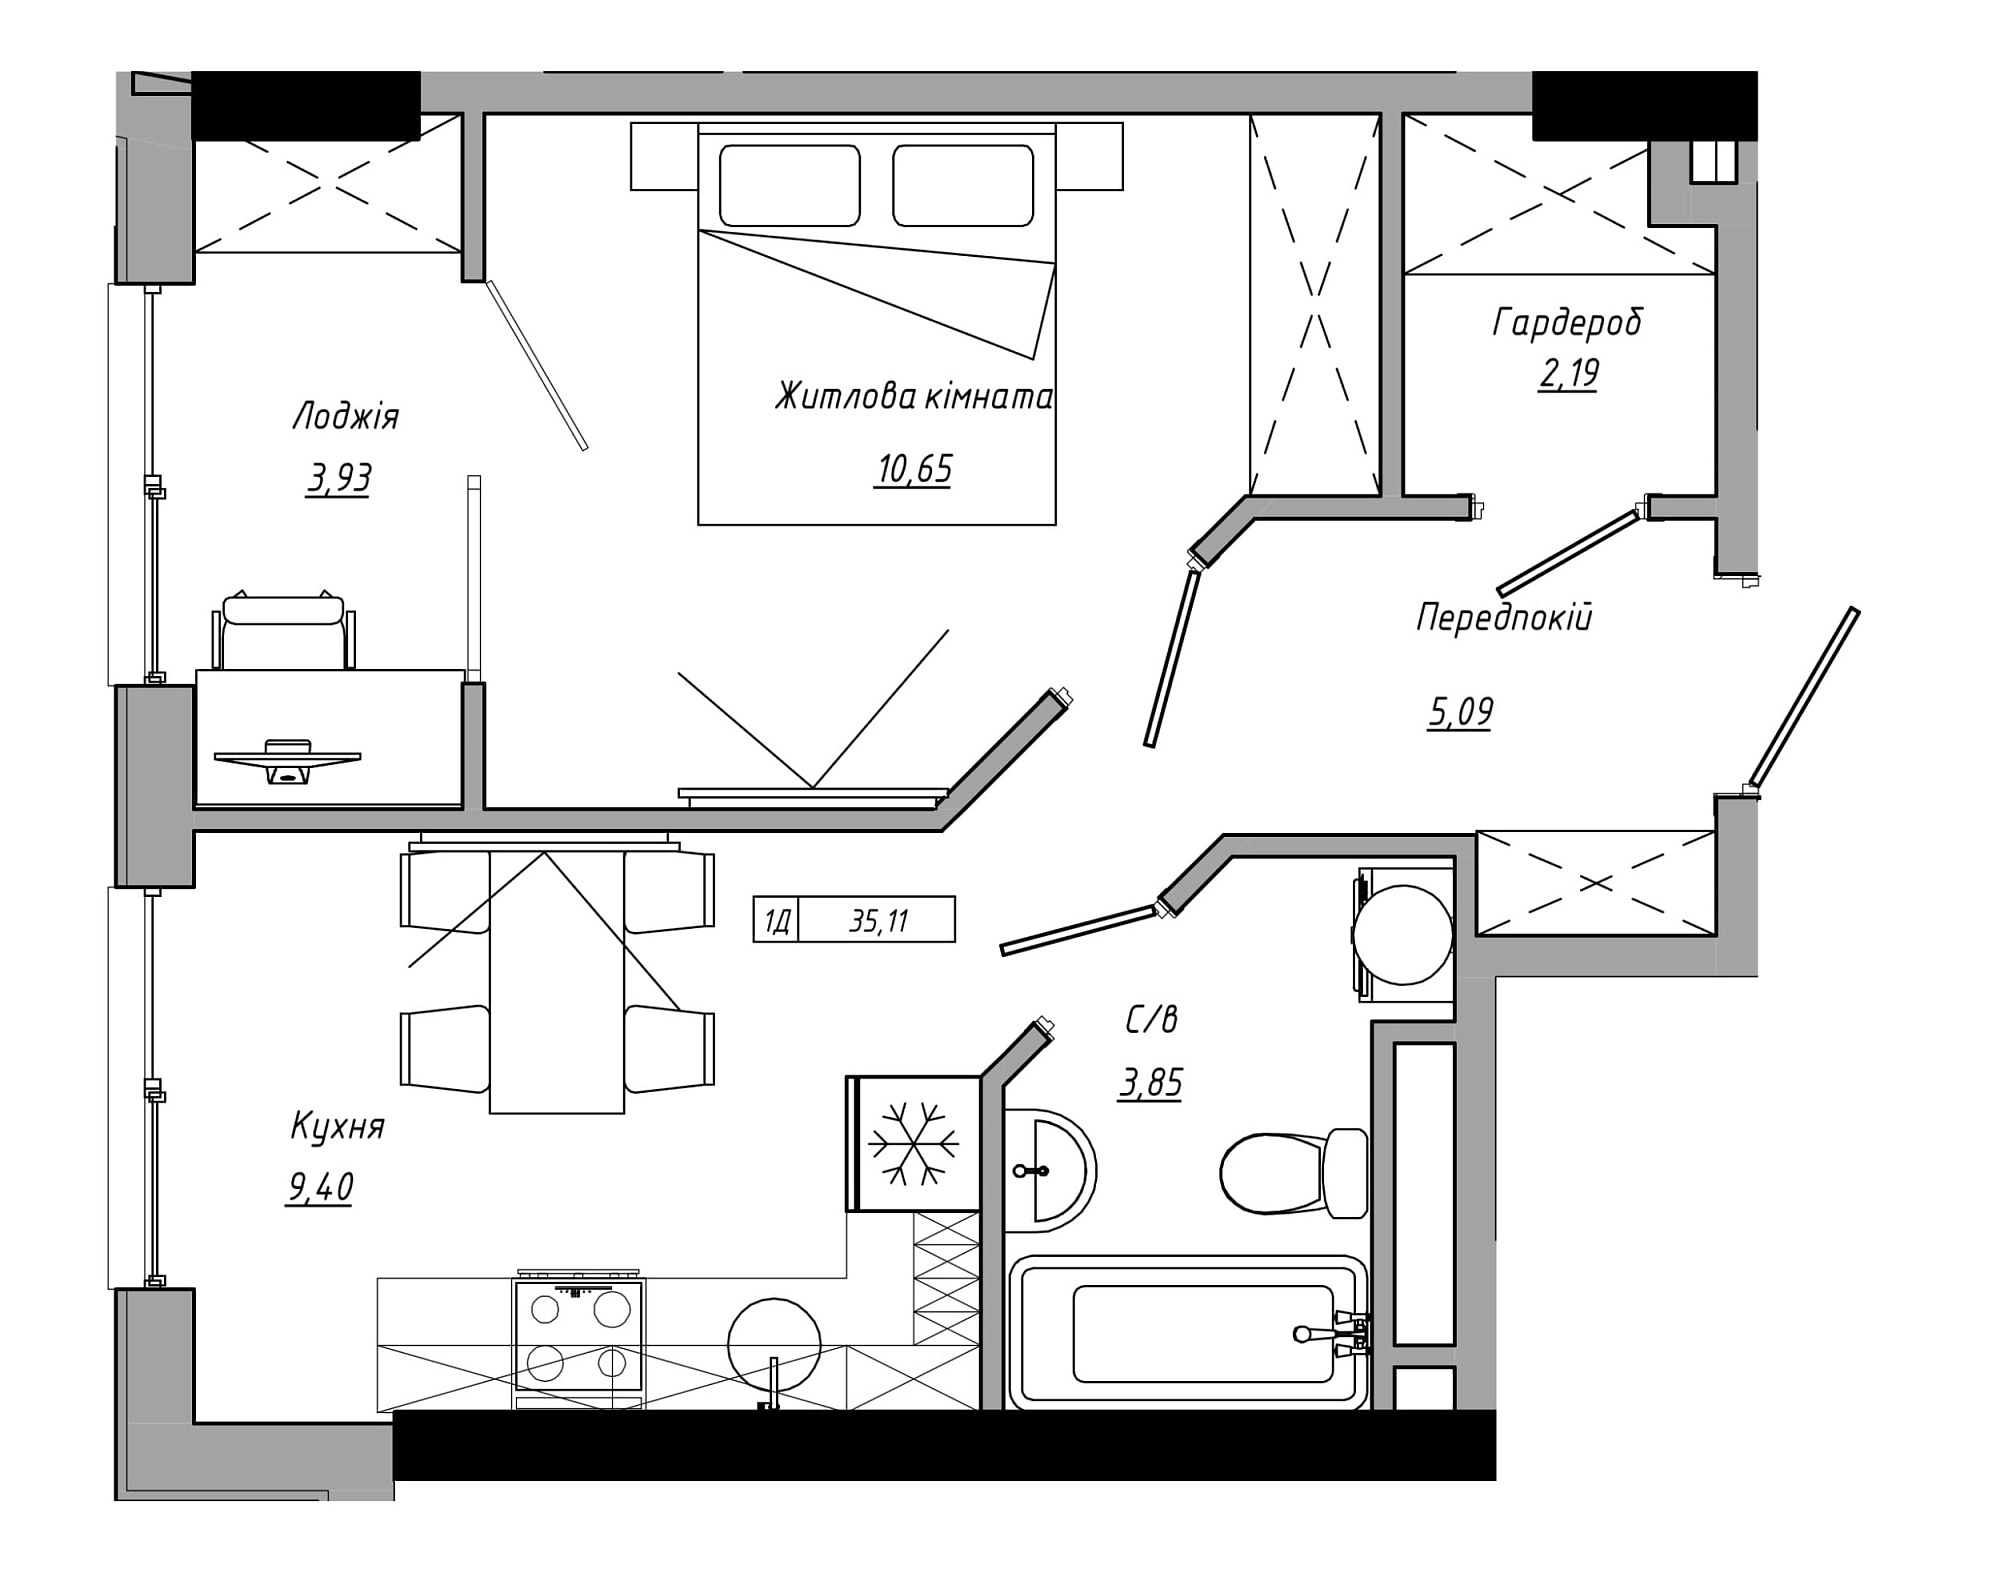 Планування 1-к квартира площею 35.11м2, AB-21-13/00106.